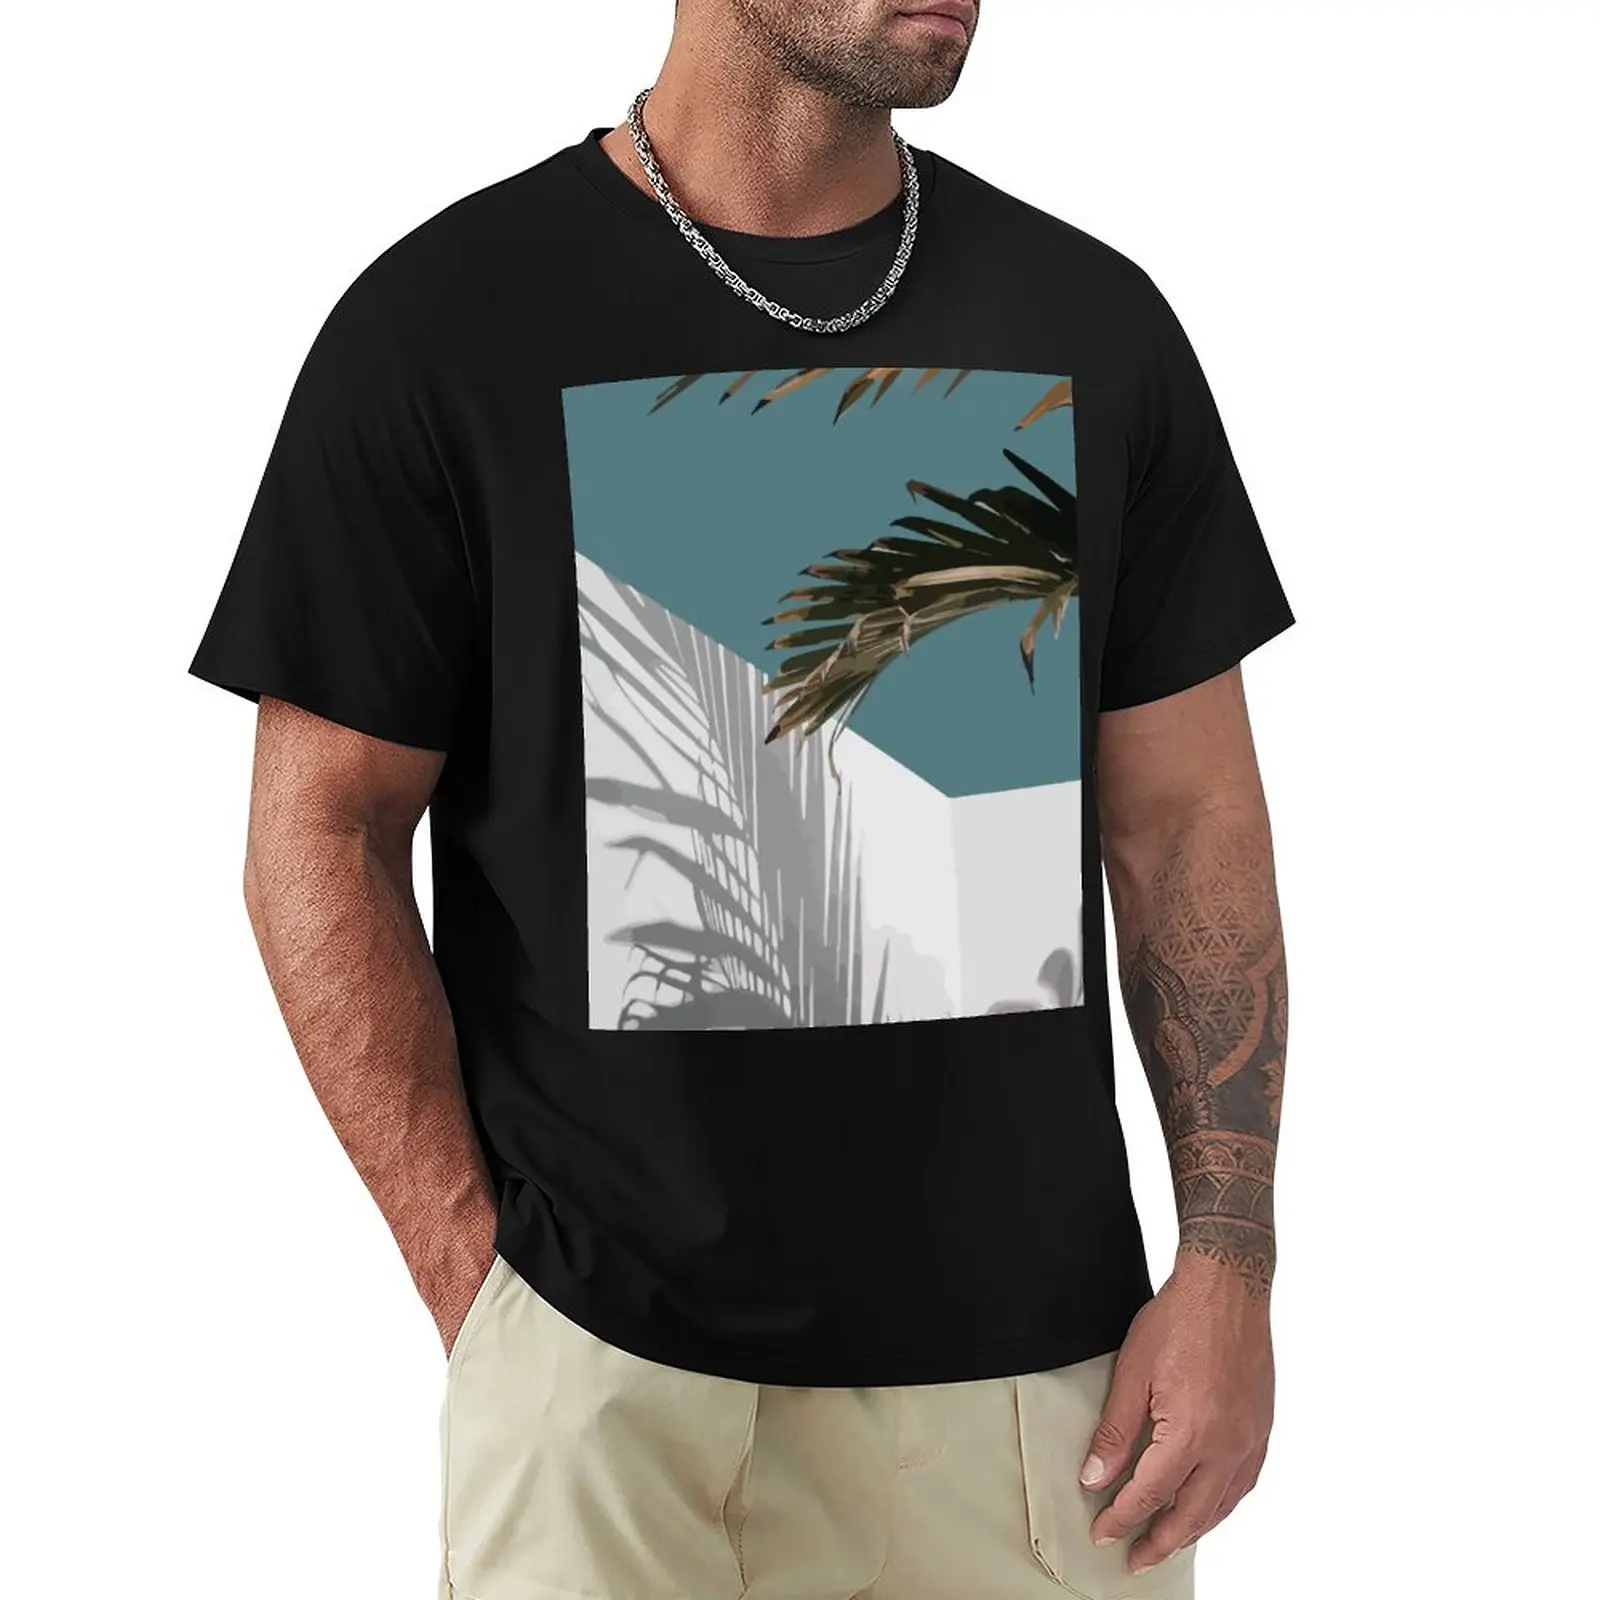 Футболка Palms Vacay, футболка с животным принтом для мальчиков, футболки на заказ, топы больших размеров, мужские футболки